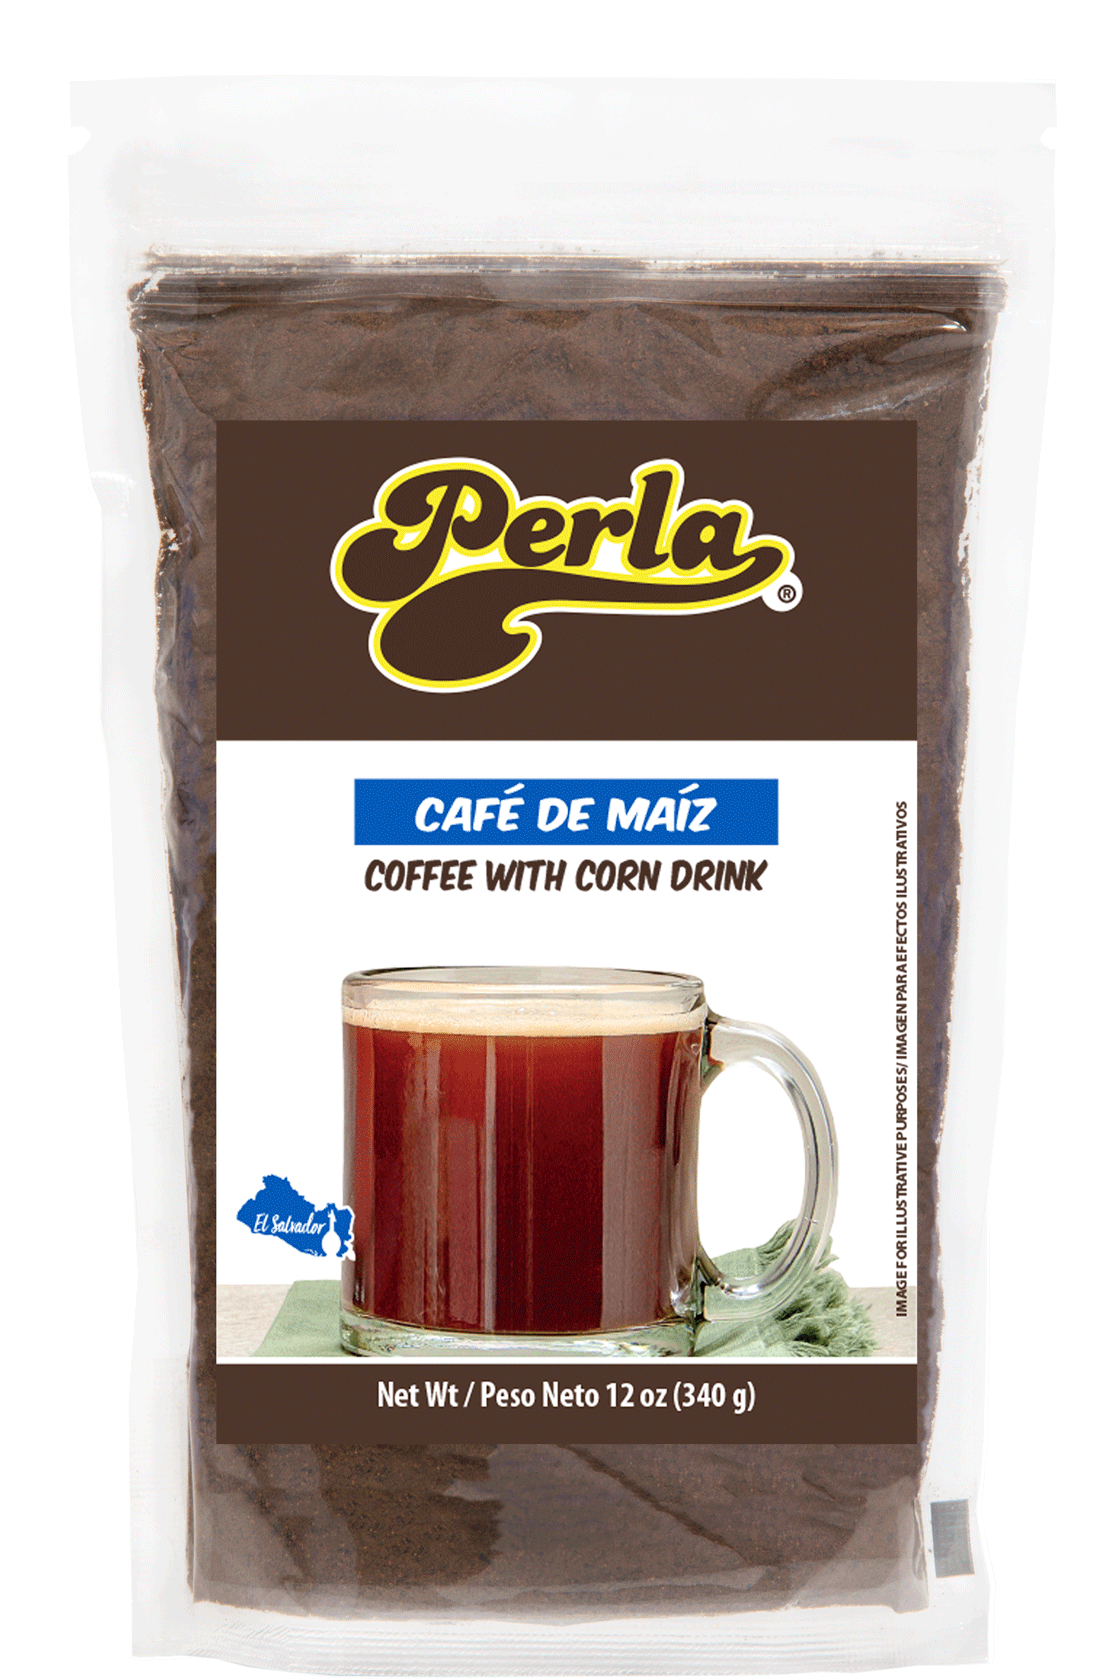 Perla Café de Maiz Salvadoreno (Coffee with Corn Drink) 12 oz